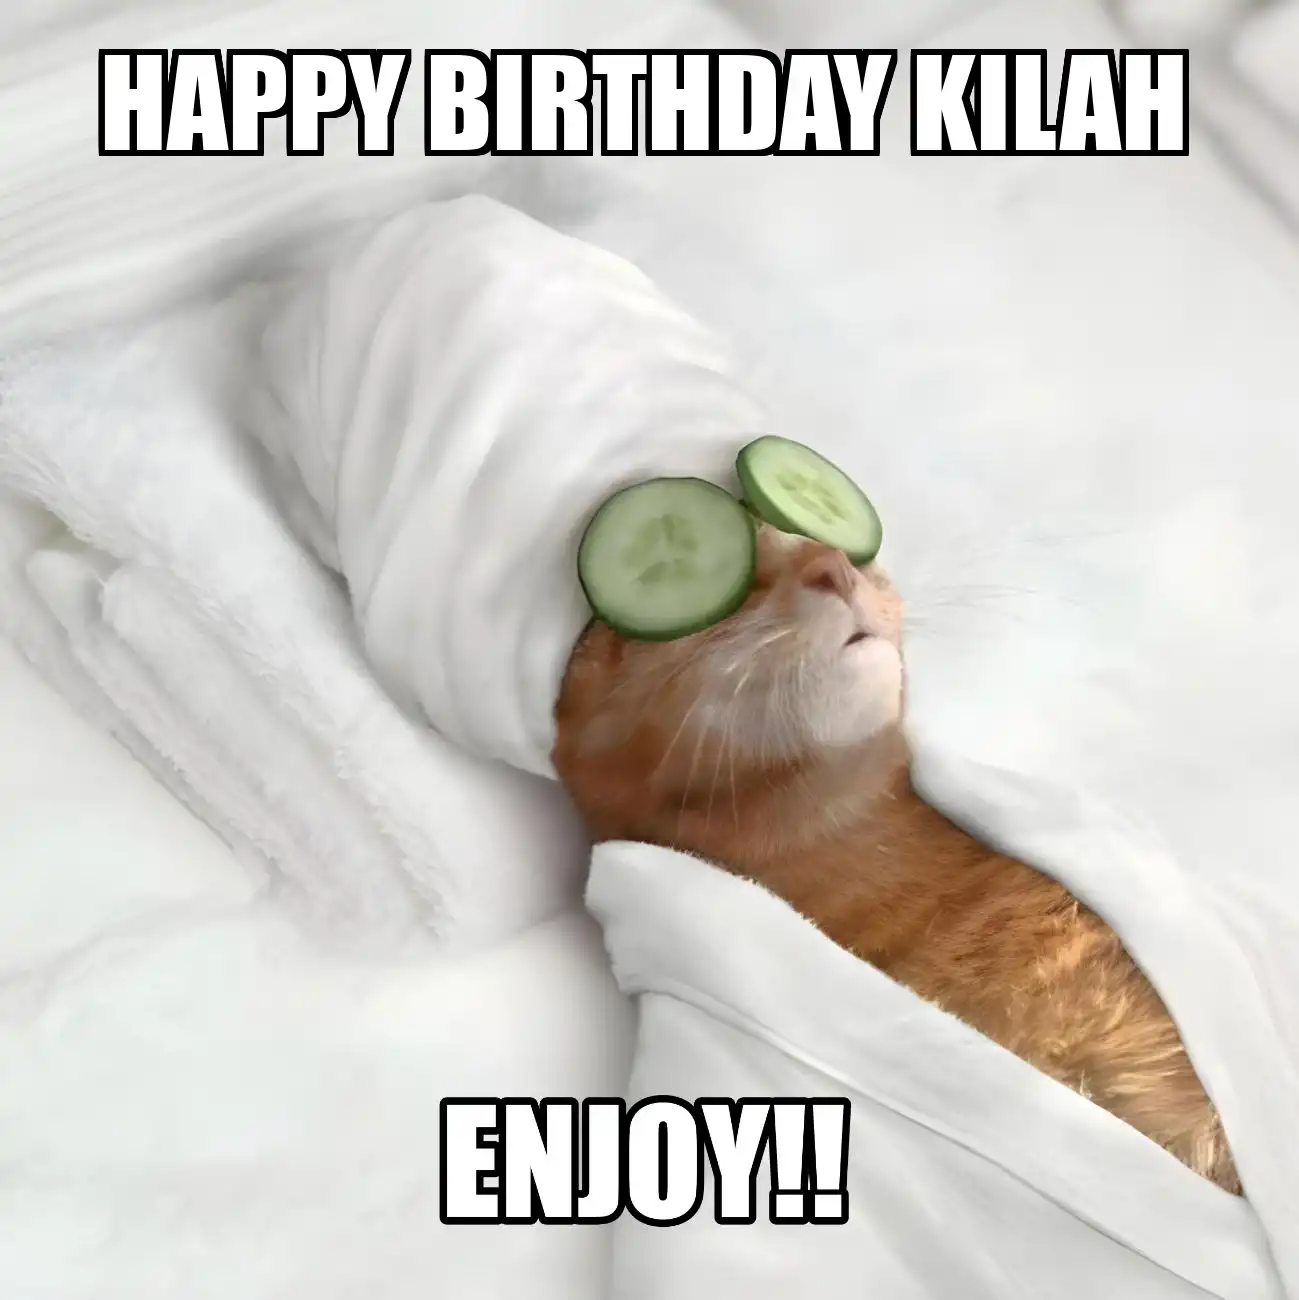 Happy Birthday Kilah Enjoy Cat Meme